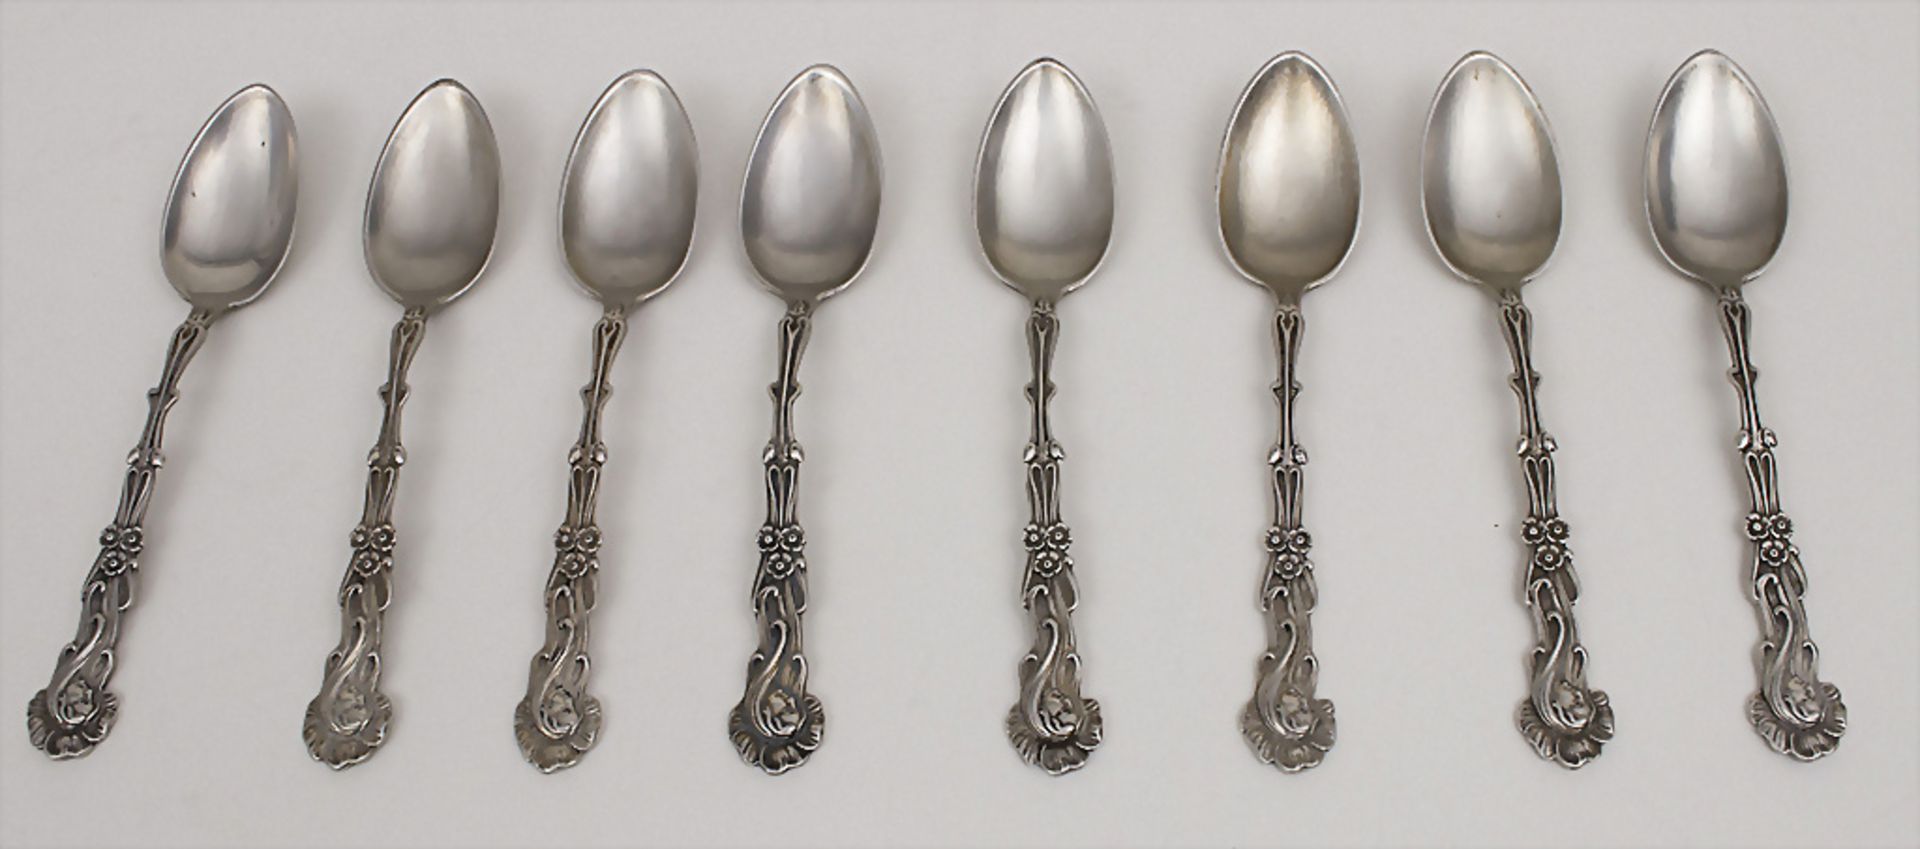 8 Jugendstil Kaffeelöffel / 8 Art Nouveau coffee spoons, deutsch, um 1900